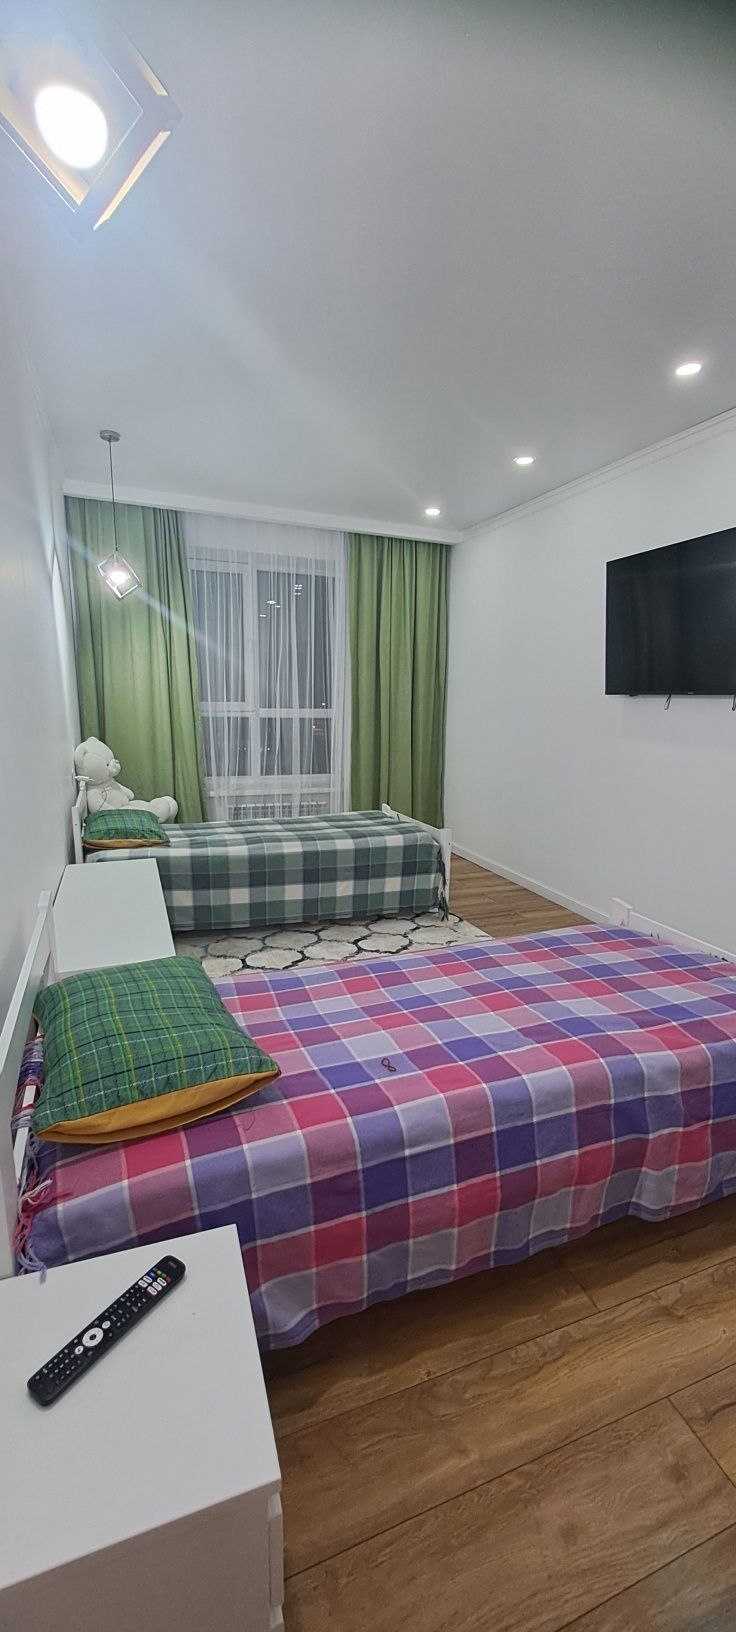 Продается теплая, светлая 3к  квартира в ЖК"NOVA CITY"в мкр Нур сити.